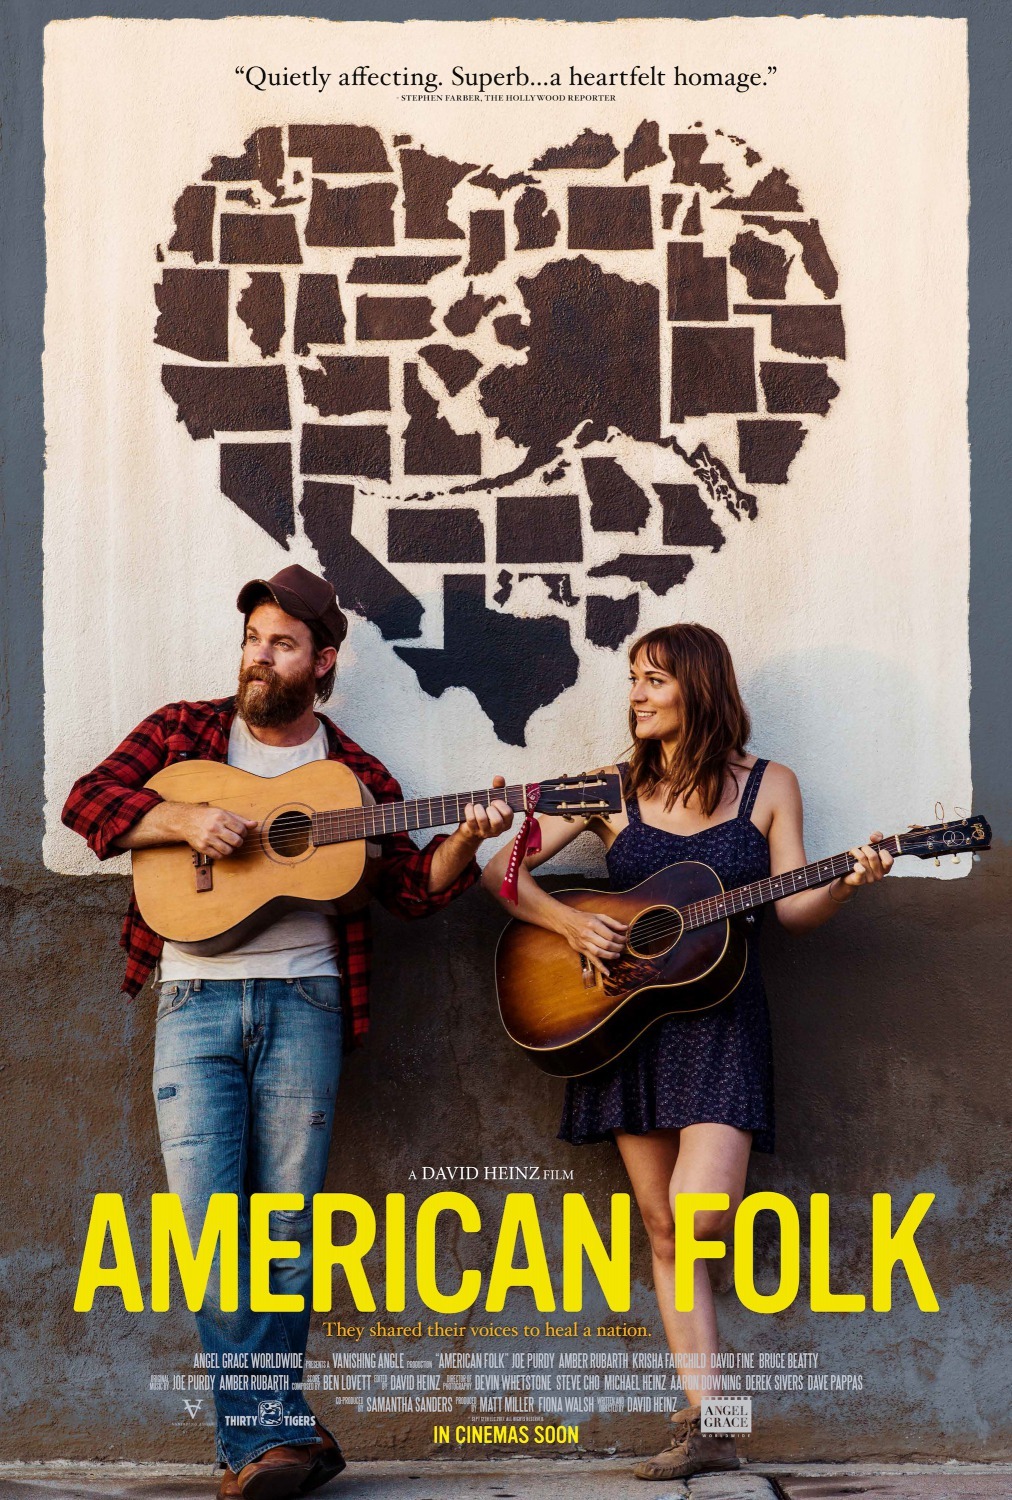  فیلم سینمایی American Folk به کارگردانی David Heinz